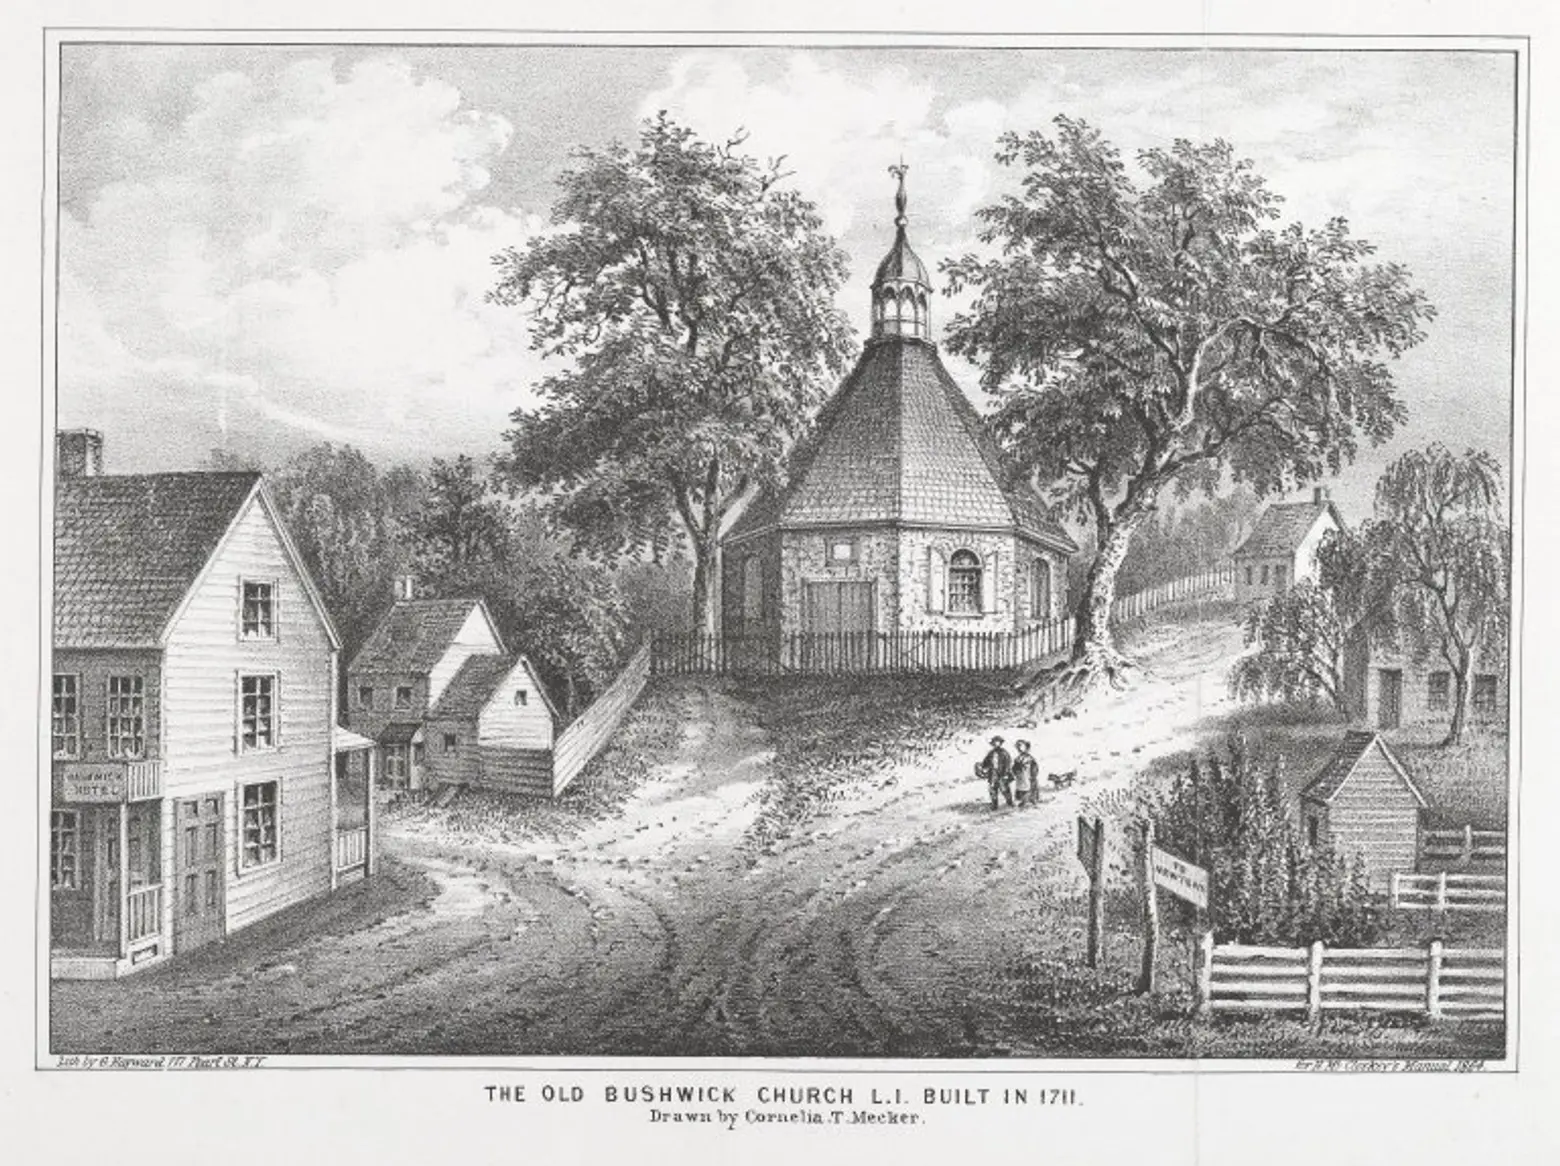 The Old Bushwick_Church_L.I._Built in 1711